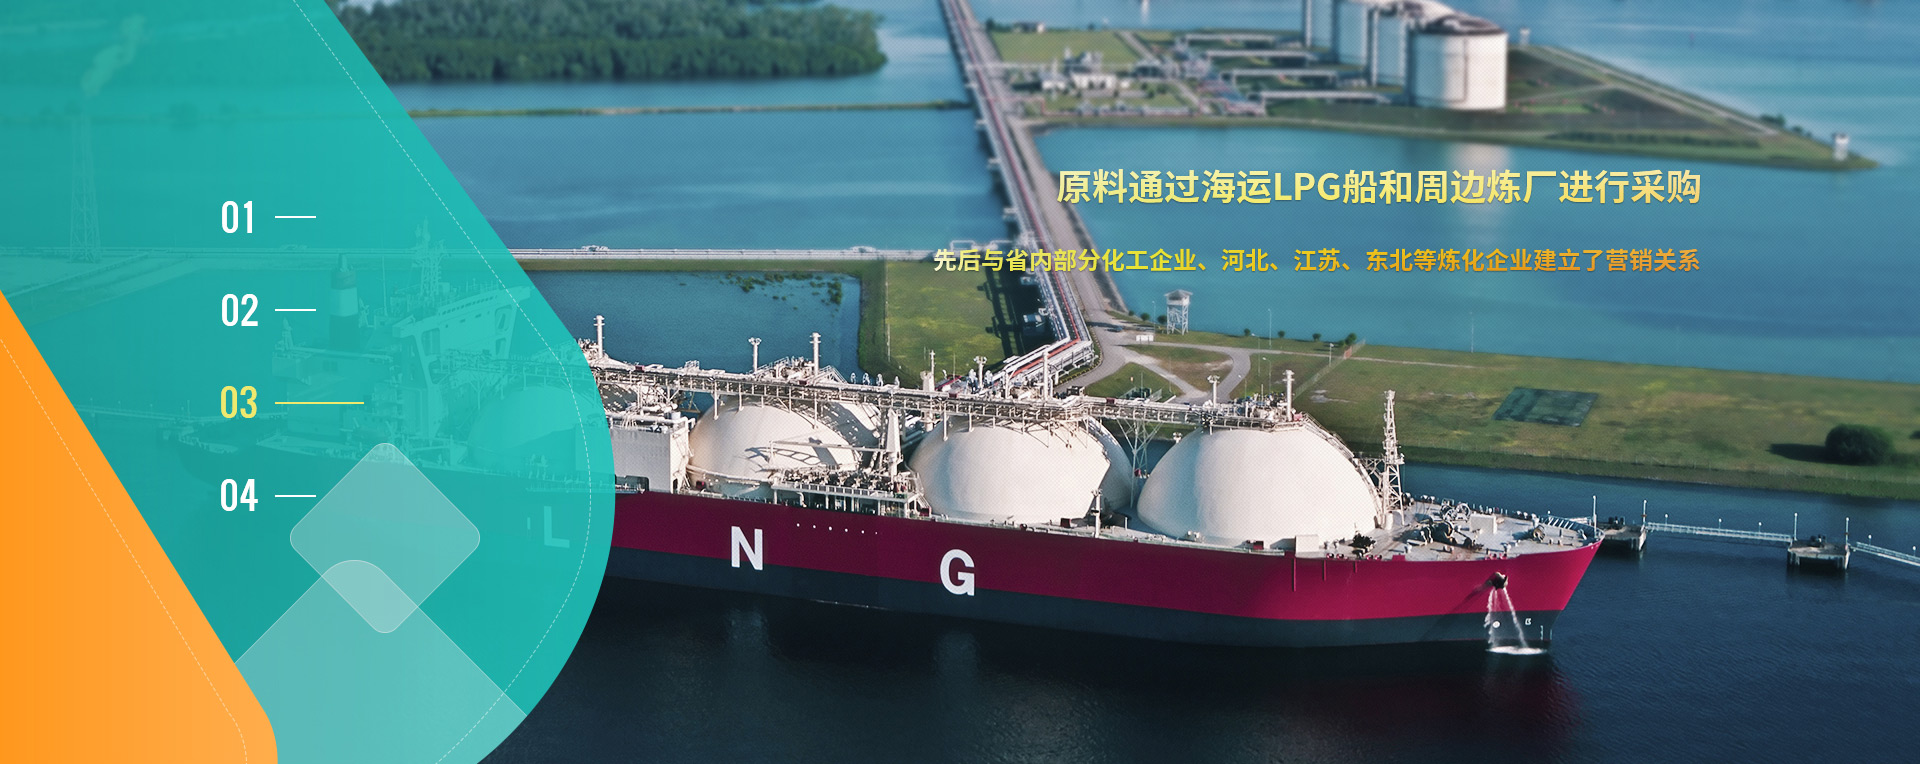 原料通過海運LPG船和周邊煉廠進行采購